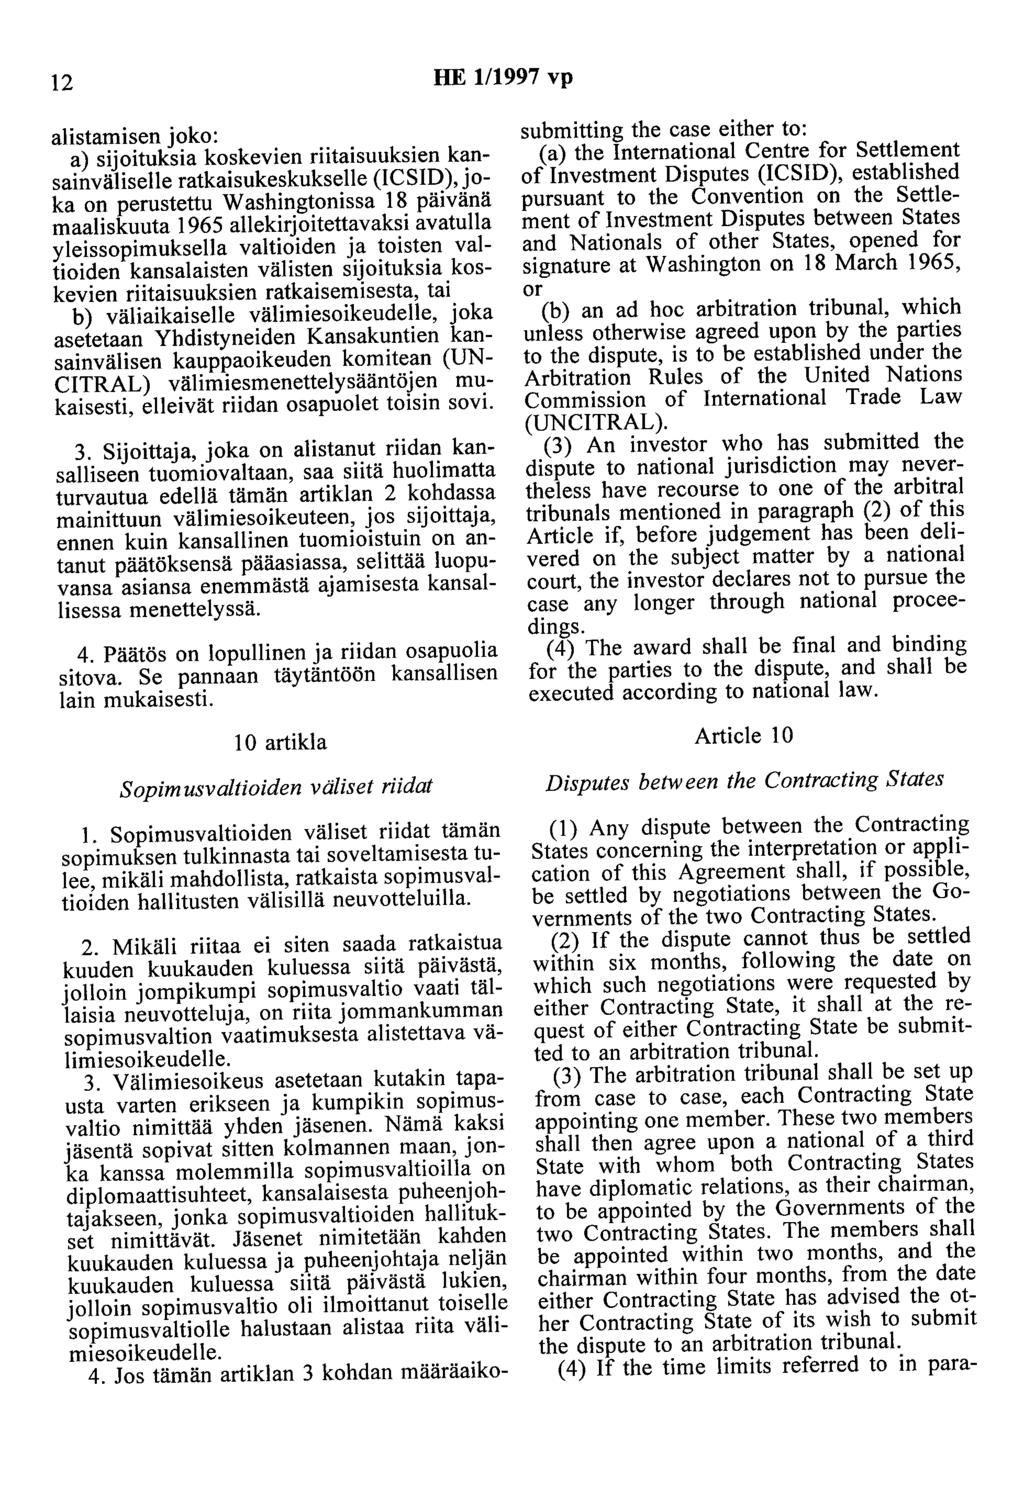 12 HE 111997 vp alistamisen joko: a) sijoituksia koskevien riitaisuuksien kansainväliselle ratkaisukeskukselle (ICSID), joka on perustettu Washingtonissa 18 päivänä maaliskuuta 1965